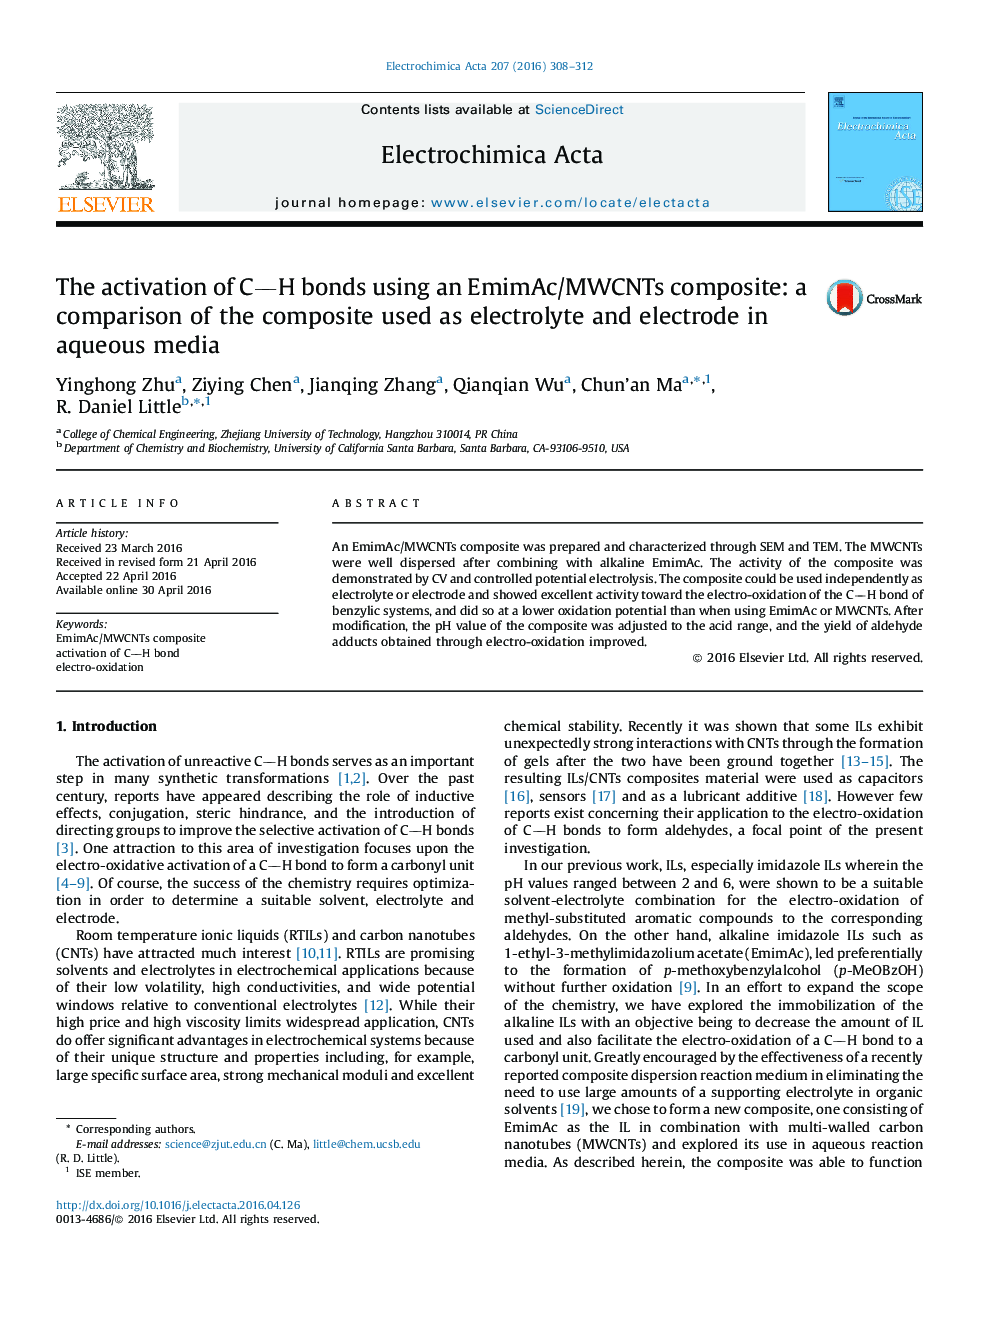 فعال سازی پیوندهای CH با استفاده از کامپوزیت EmimAc / MWCNTs: مقایسه کامپوزیت مورد استفاده در الکترولیت و الکترود در محیط های آبی